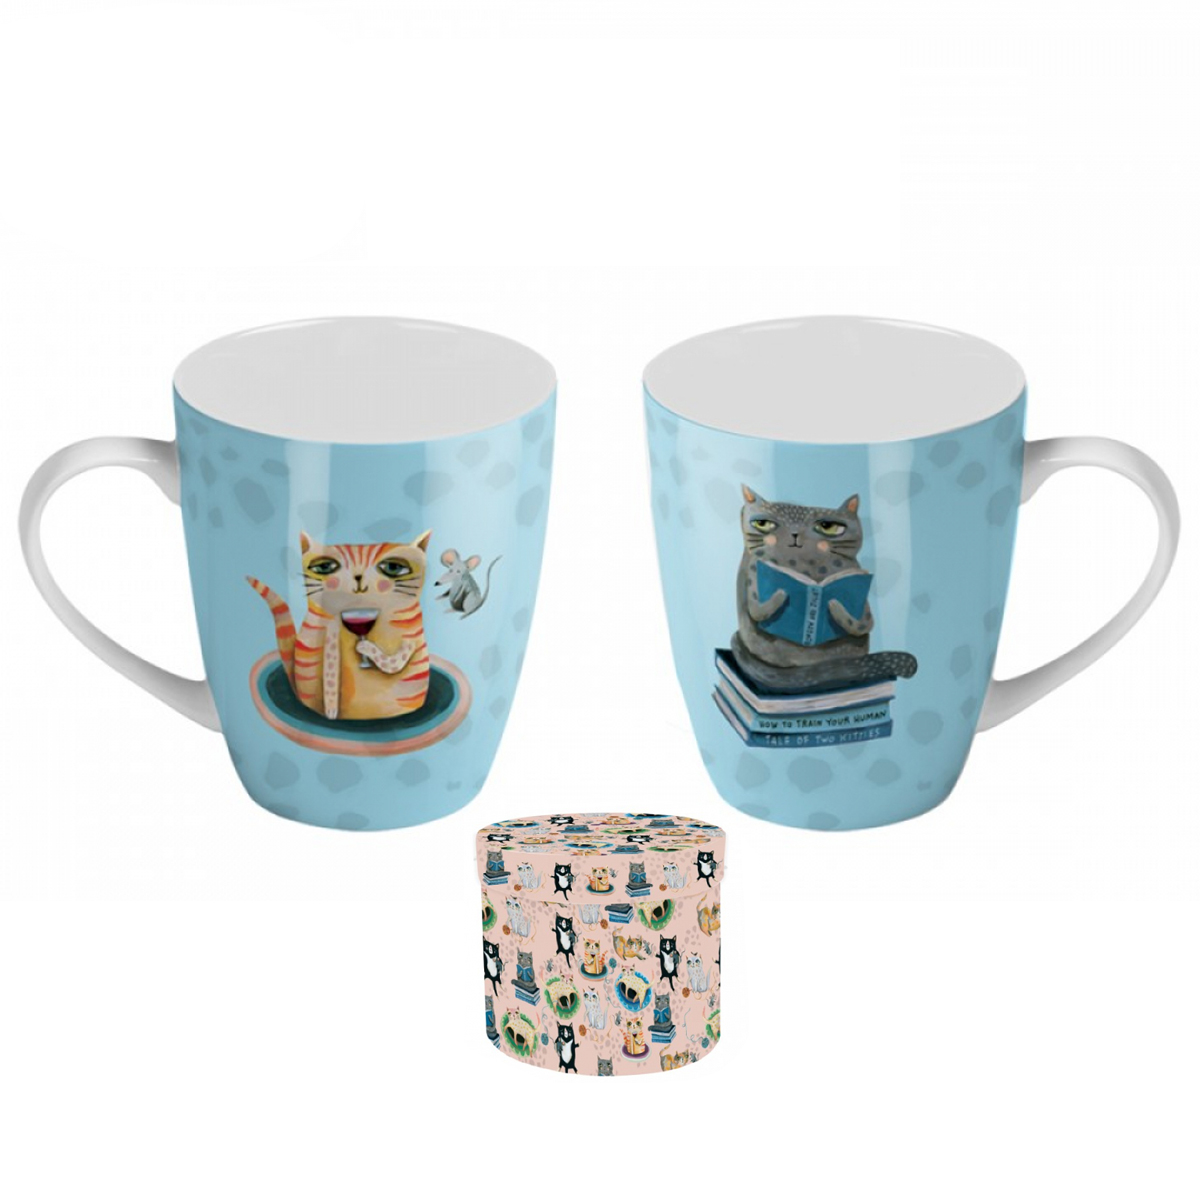 Coffret mug porcelaine \'Allen Designs\' bleu (chat) - 8x10 cm - [A1992]